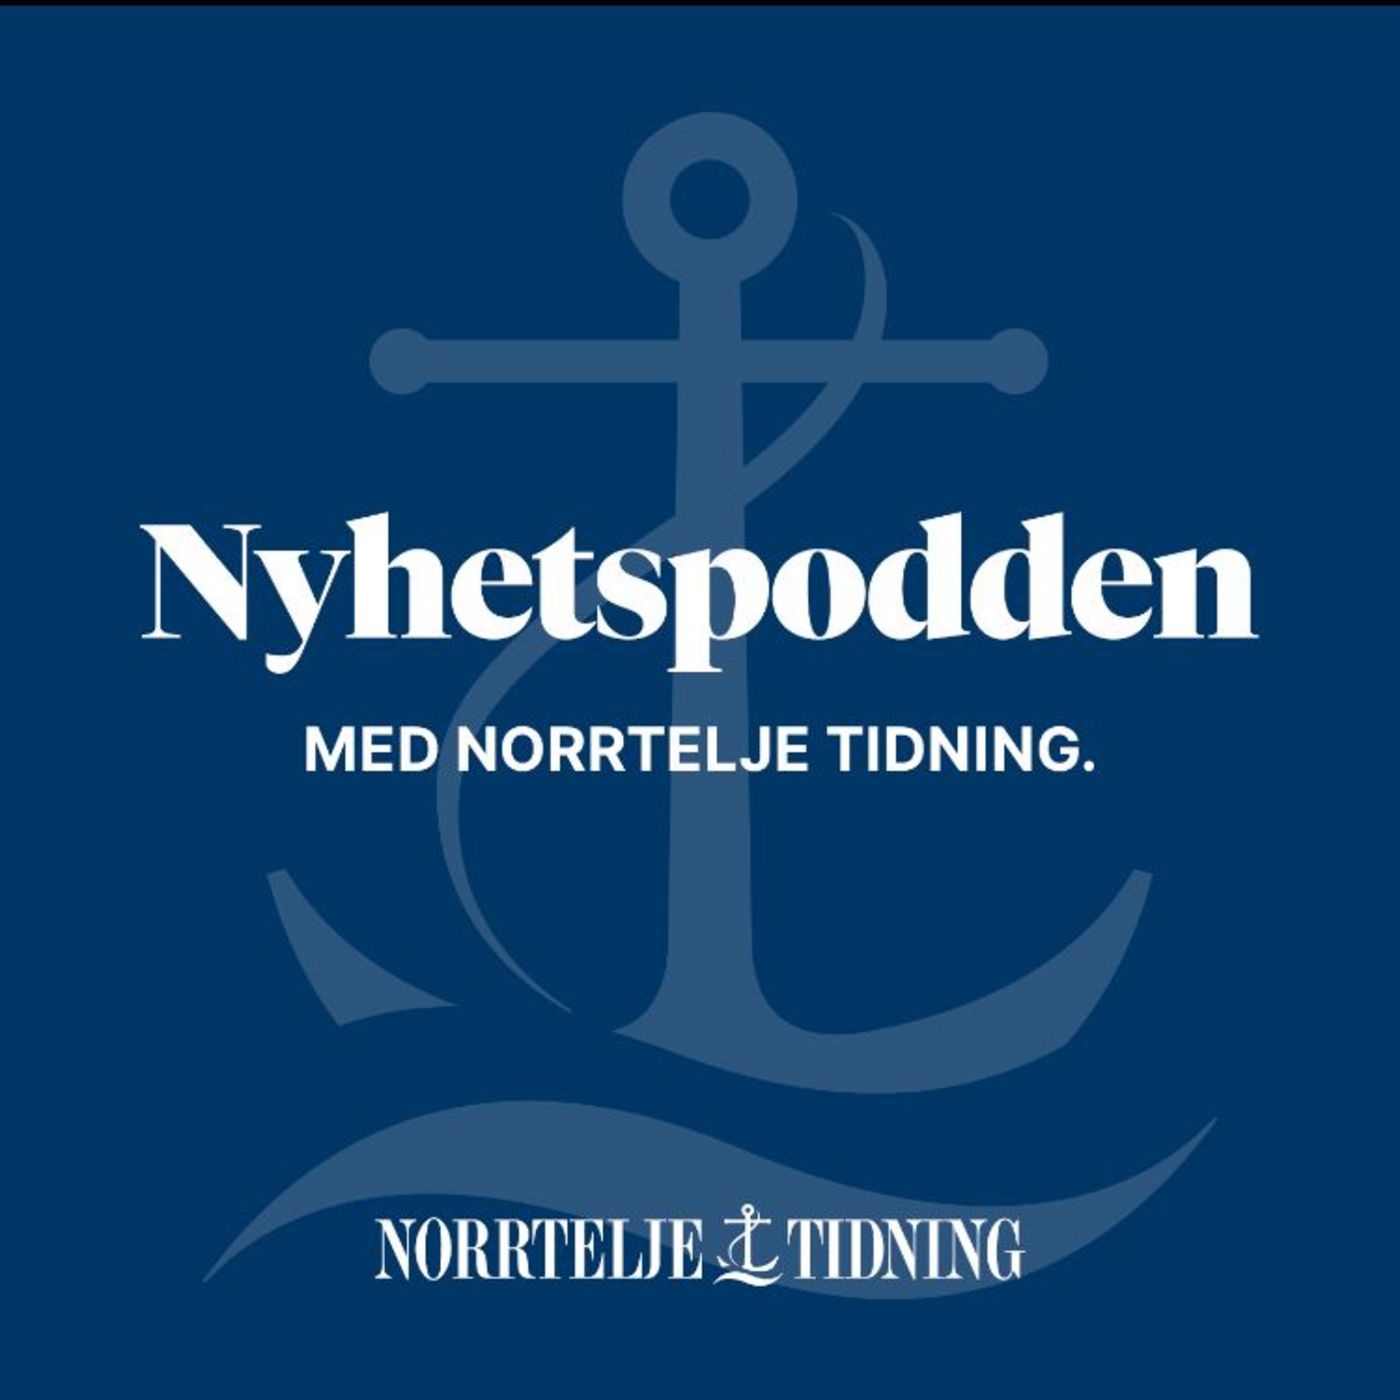 Nyhetspodden från Norrtelje Tidning